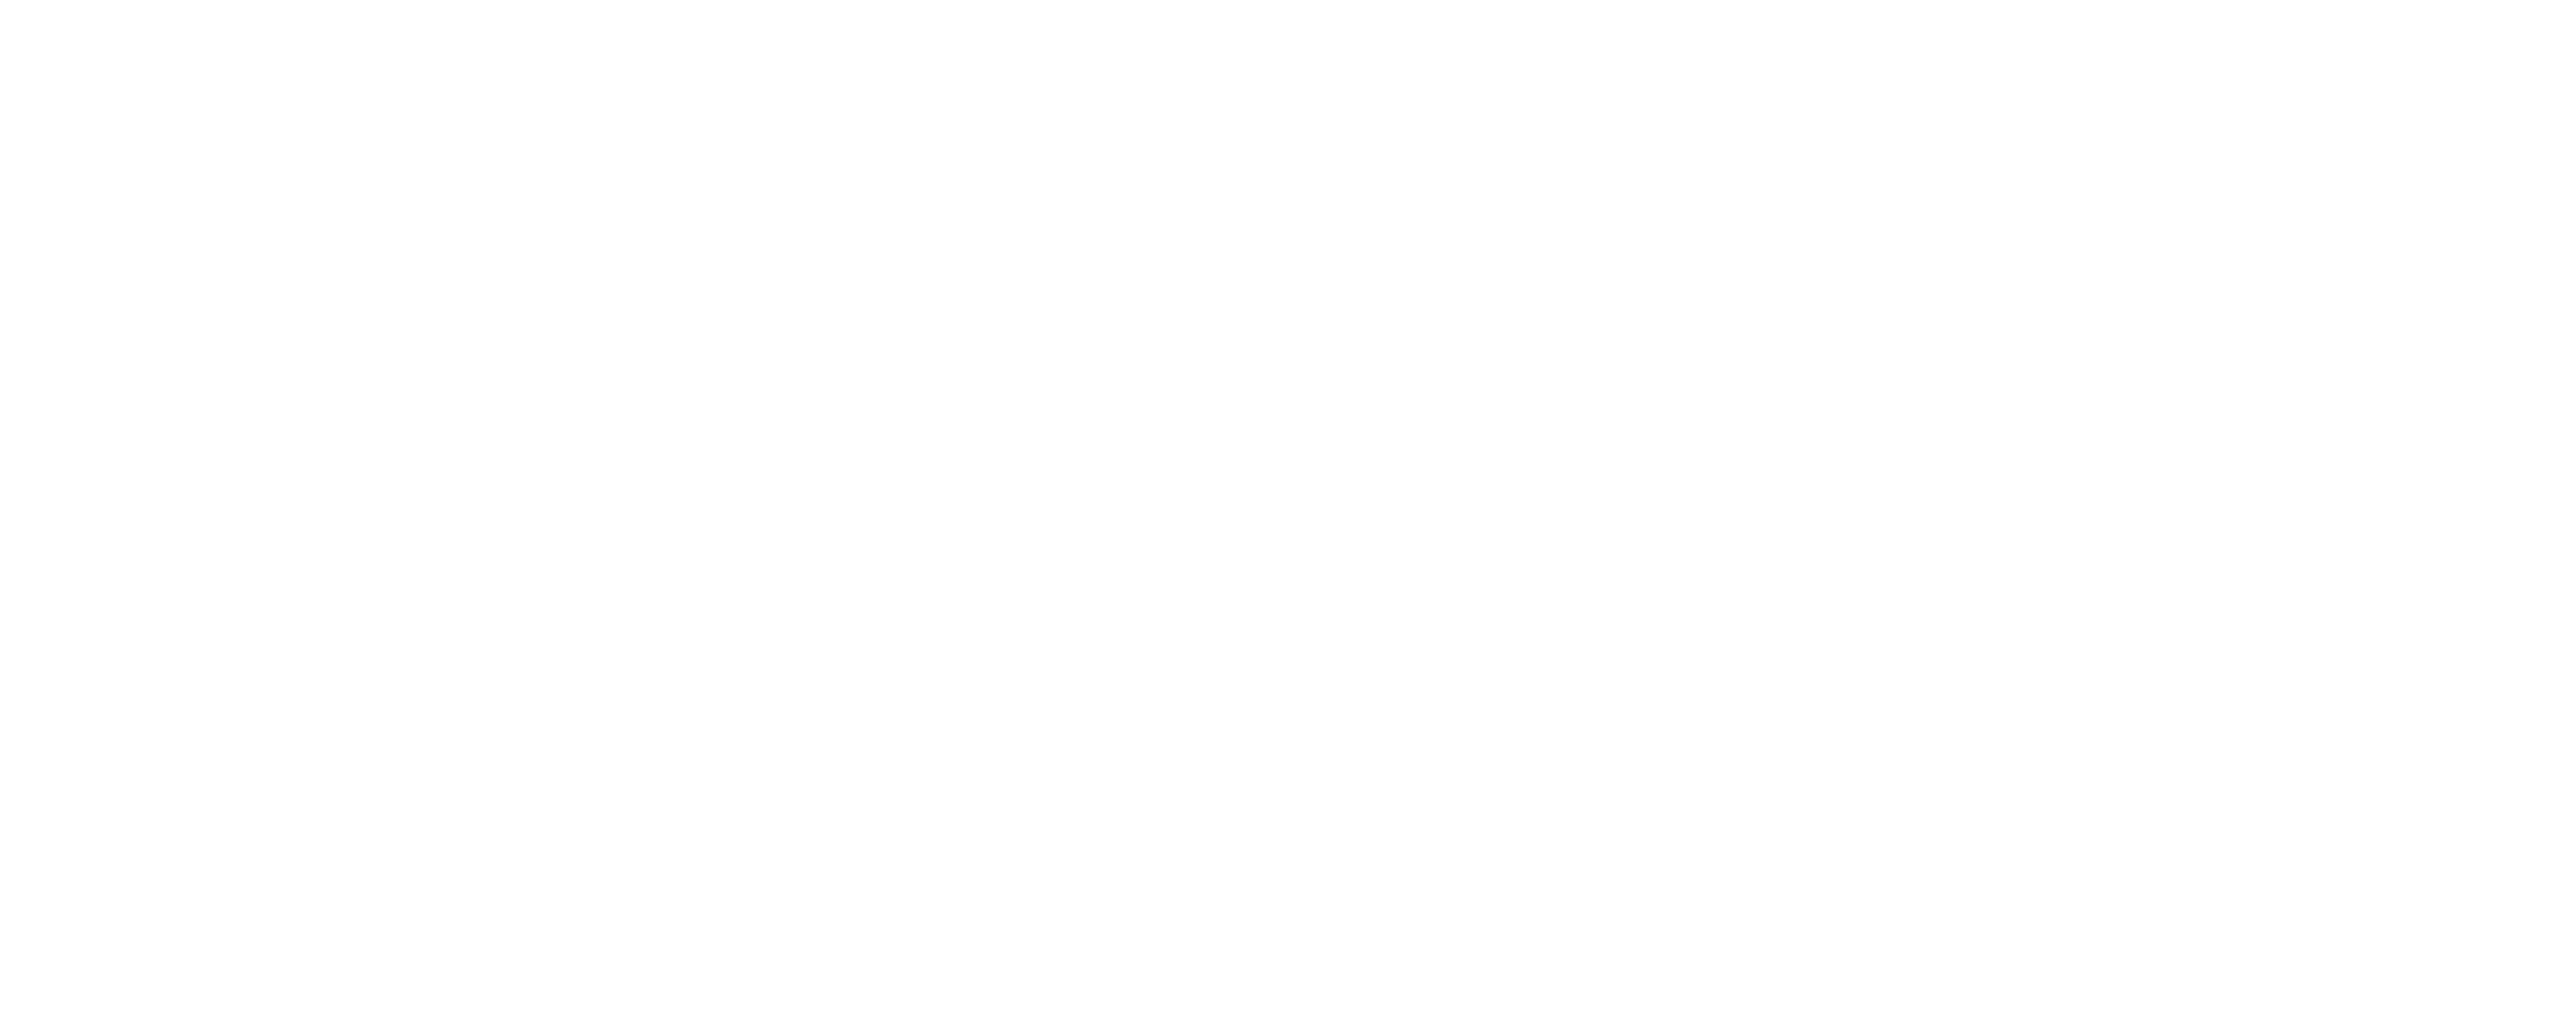 Conseil Central de Surveillance Pénitentiaire